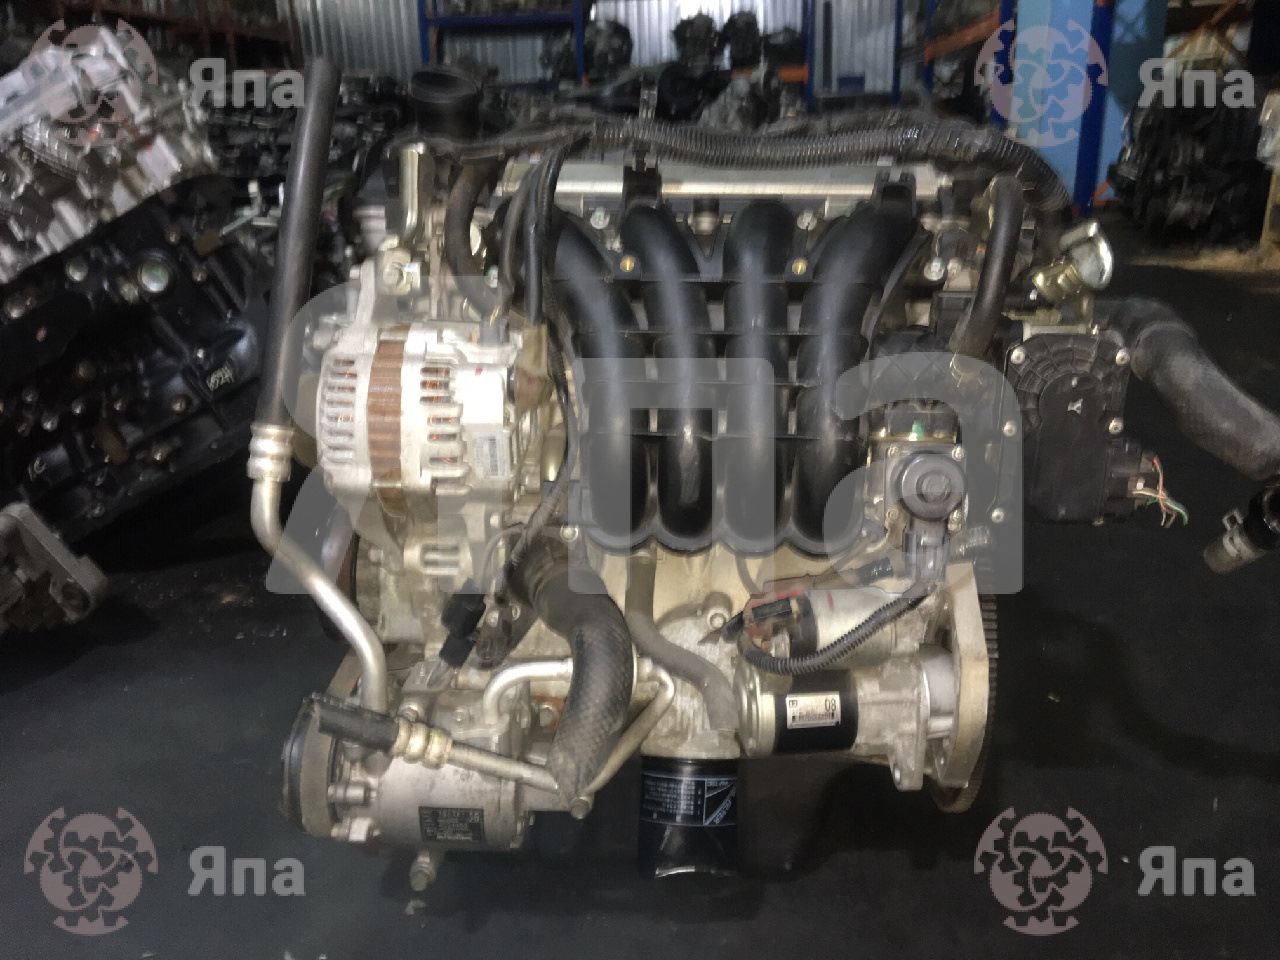 Двигатель митсубиси 4g93: характеристика, конструкция, особенности, обслуживание, ремонт, тюнинг